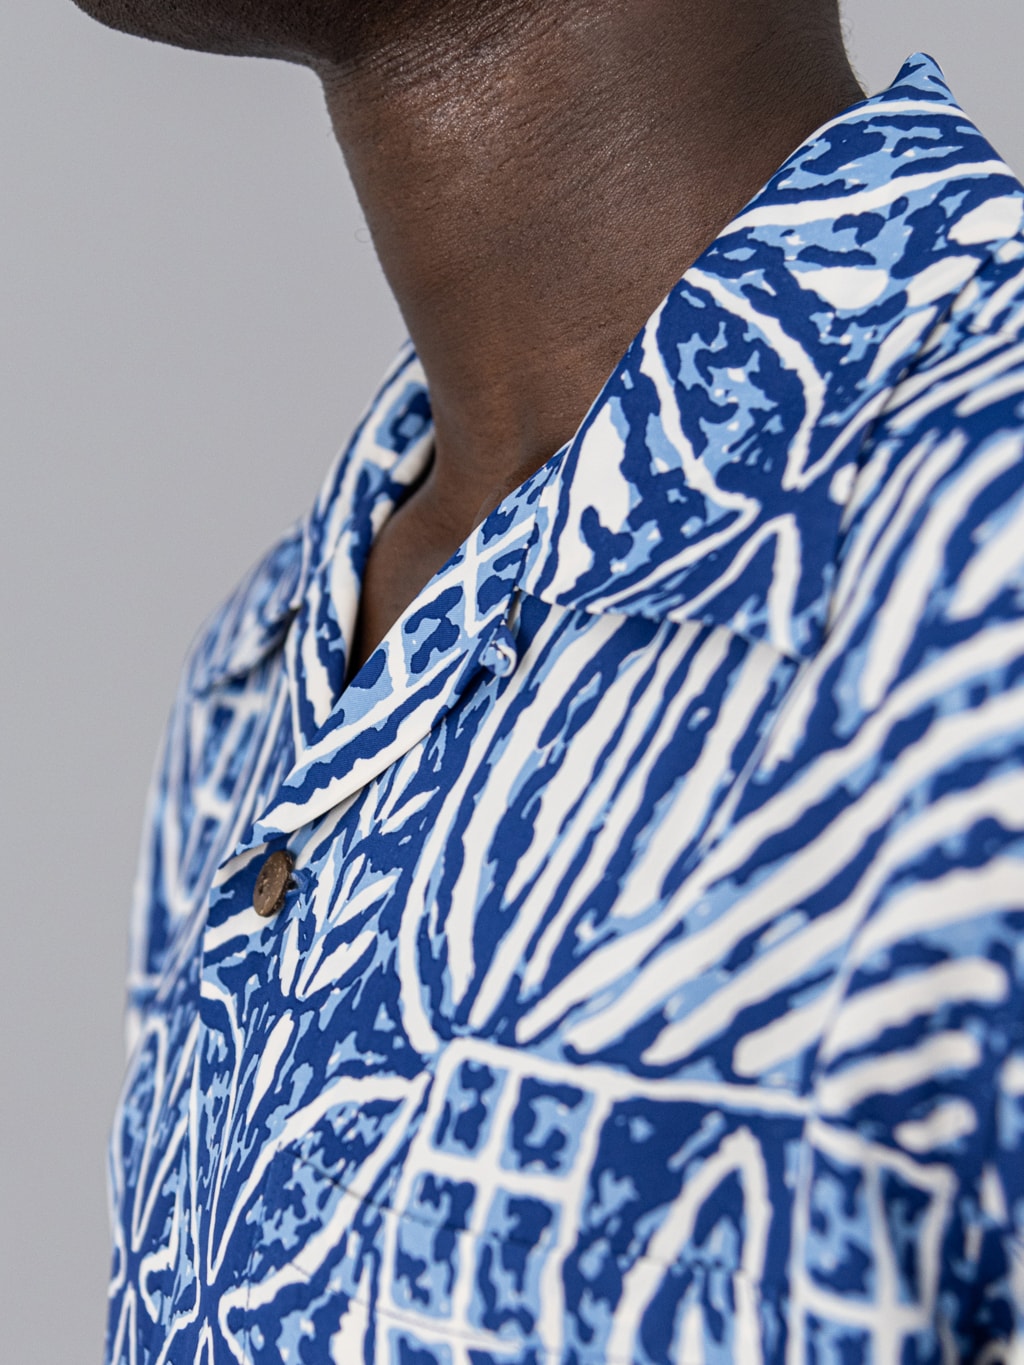 Sun Surf Polynesian Tapa Design Hawaiian Shirt navy collar